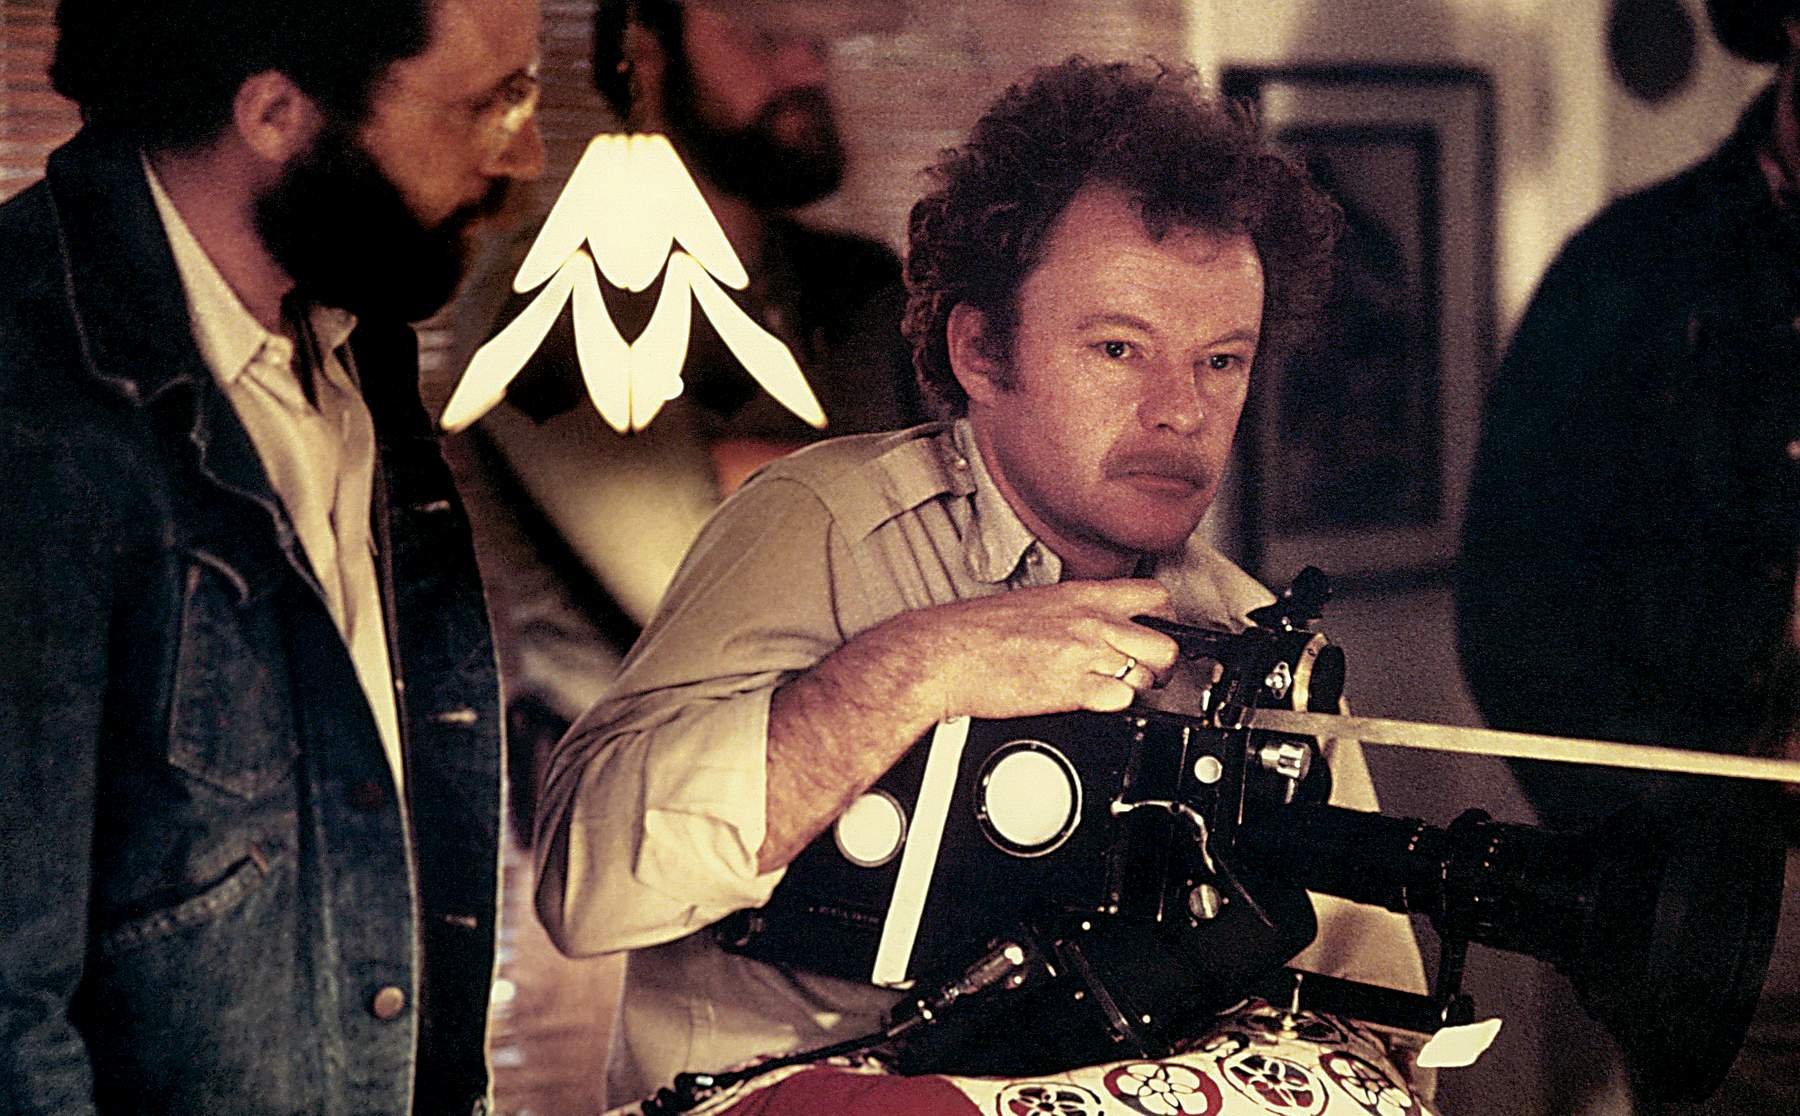  A murit cineastul Michael Chapman, directorul de imagine al filmelor Taxi Driver şi Raging Bull